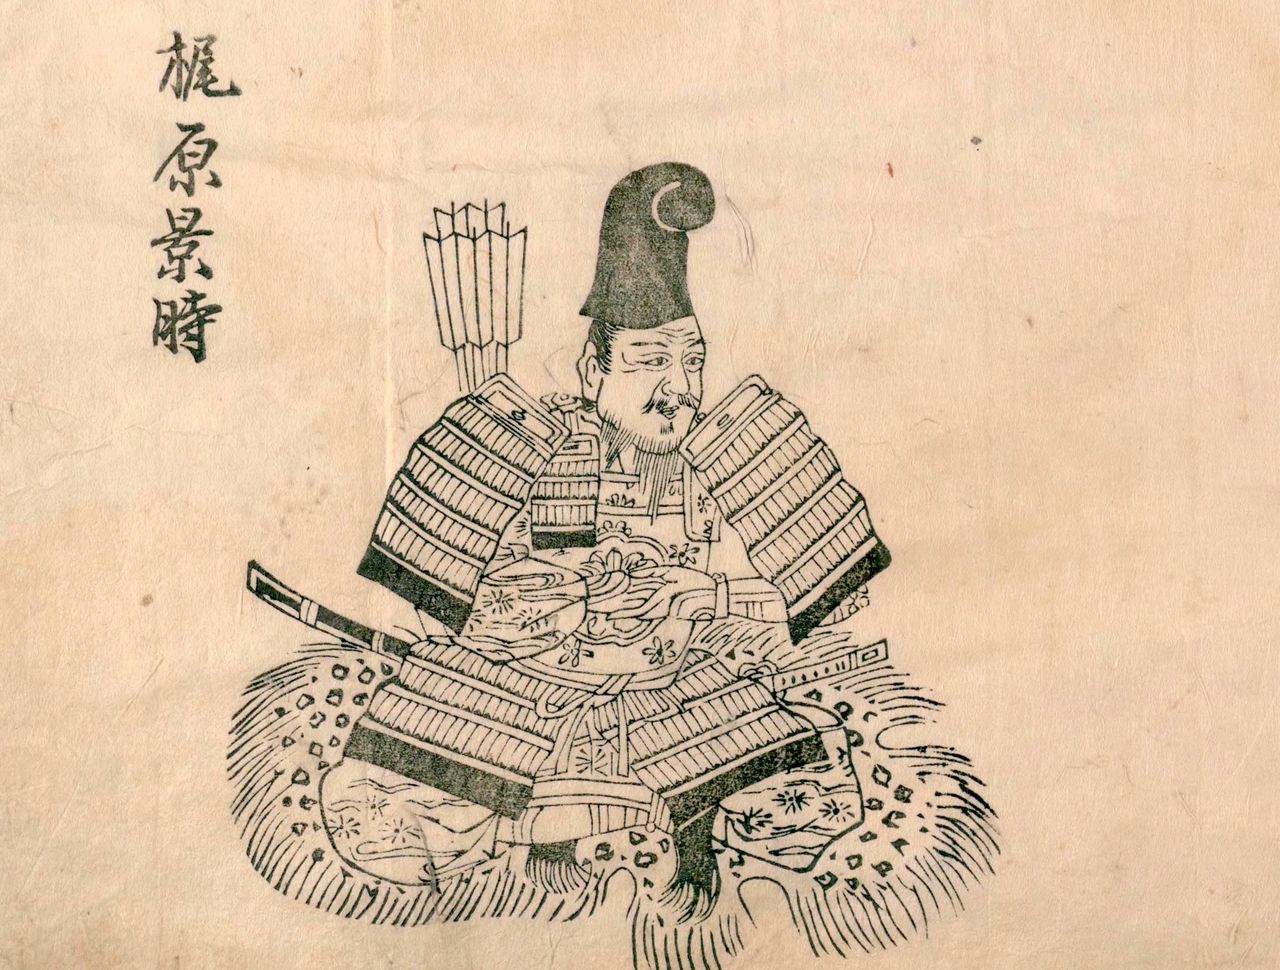 Retrato del shukurō (“veterano”) Kajihara Kagetoki en el Honchō hyakushōden (“Leyendas de guerreros de Japón”). Curtido en muchas batallas durante los años de la guerra entre los clanes de Taira y Minamoto, tras la muerte de Yoritomo fue destituido de sus cargos y finalmente asesinado. (Colección de la Biblioteca Nacional de la Dieta)